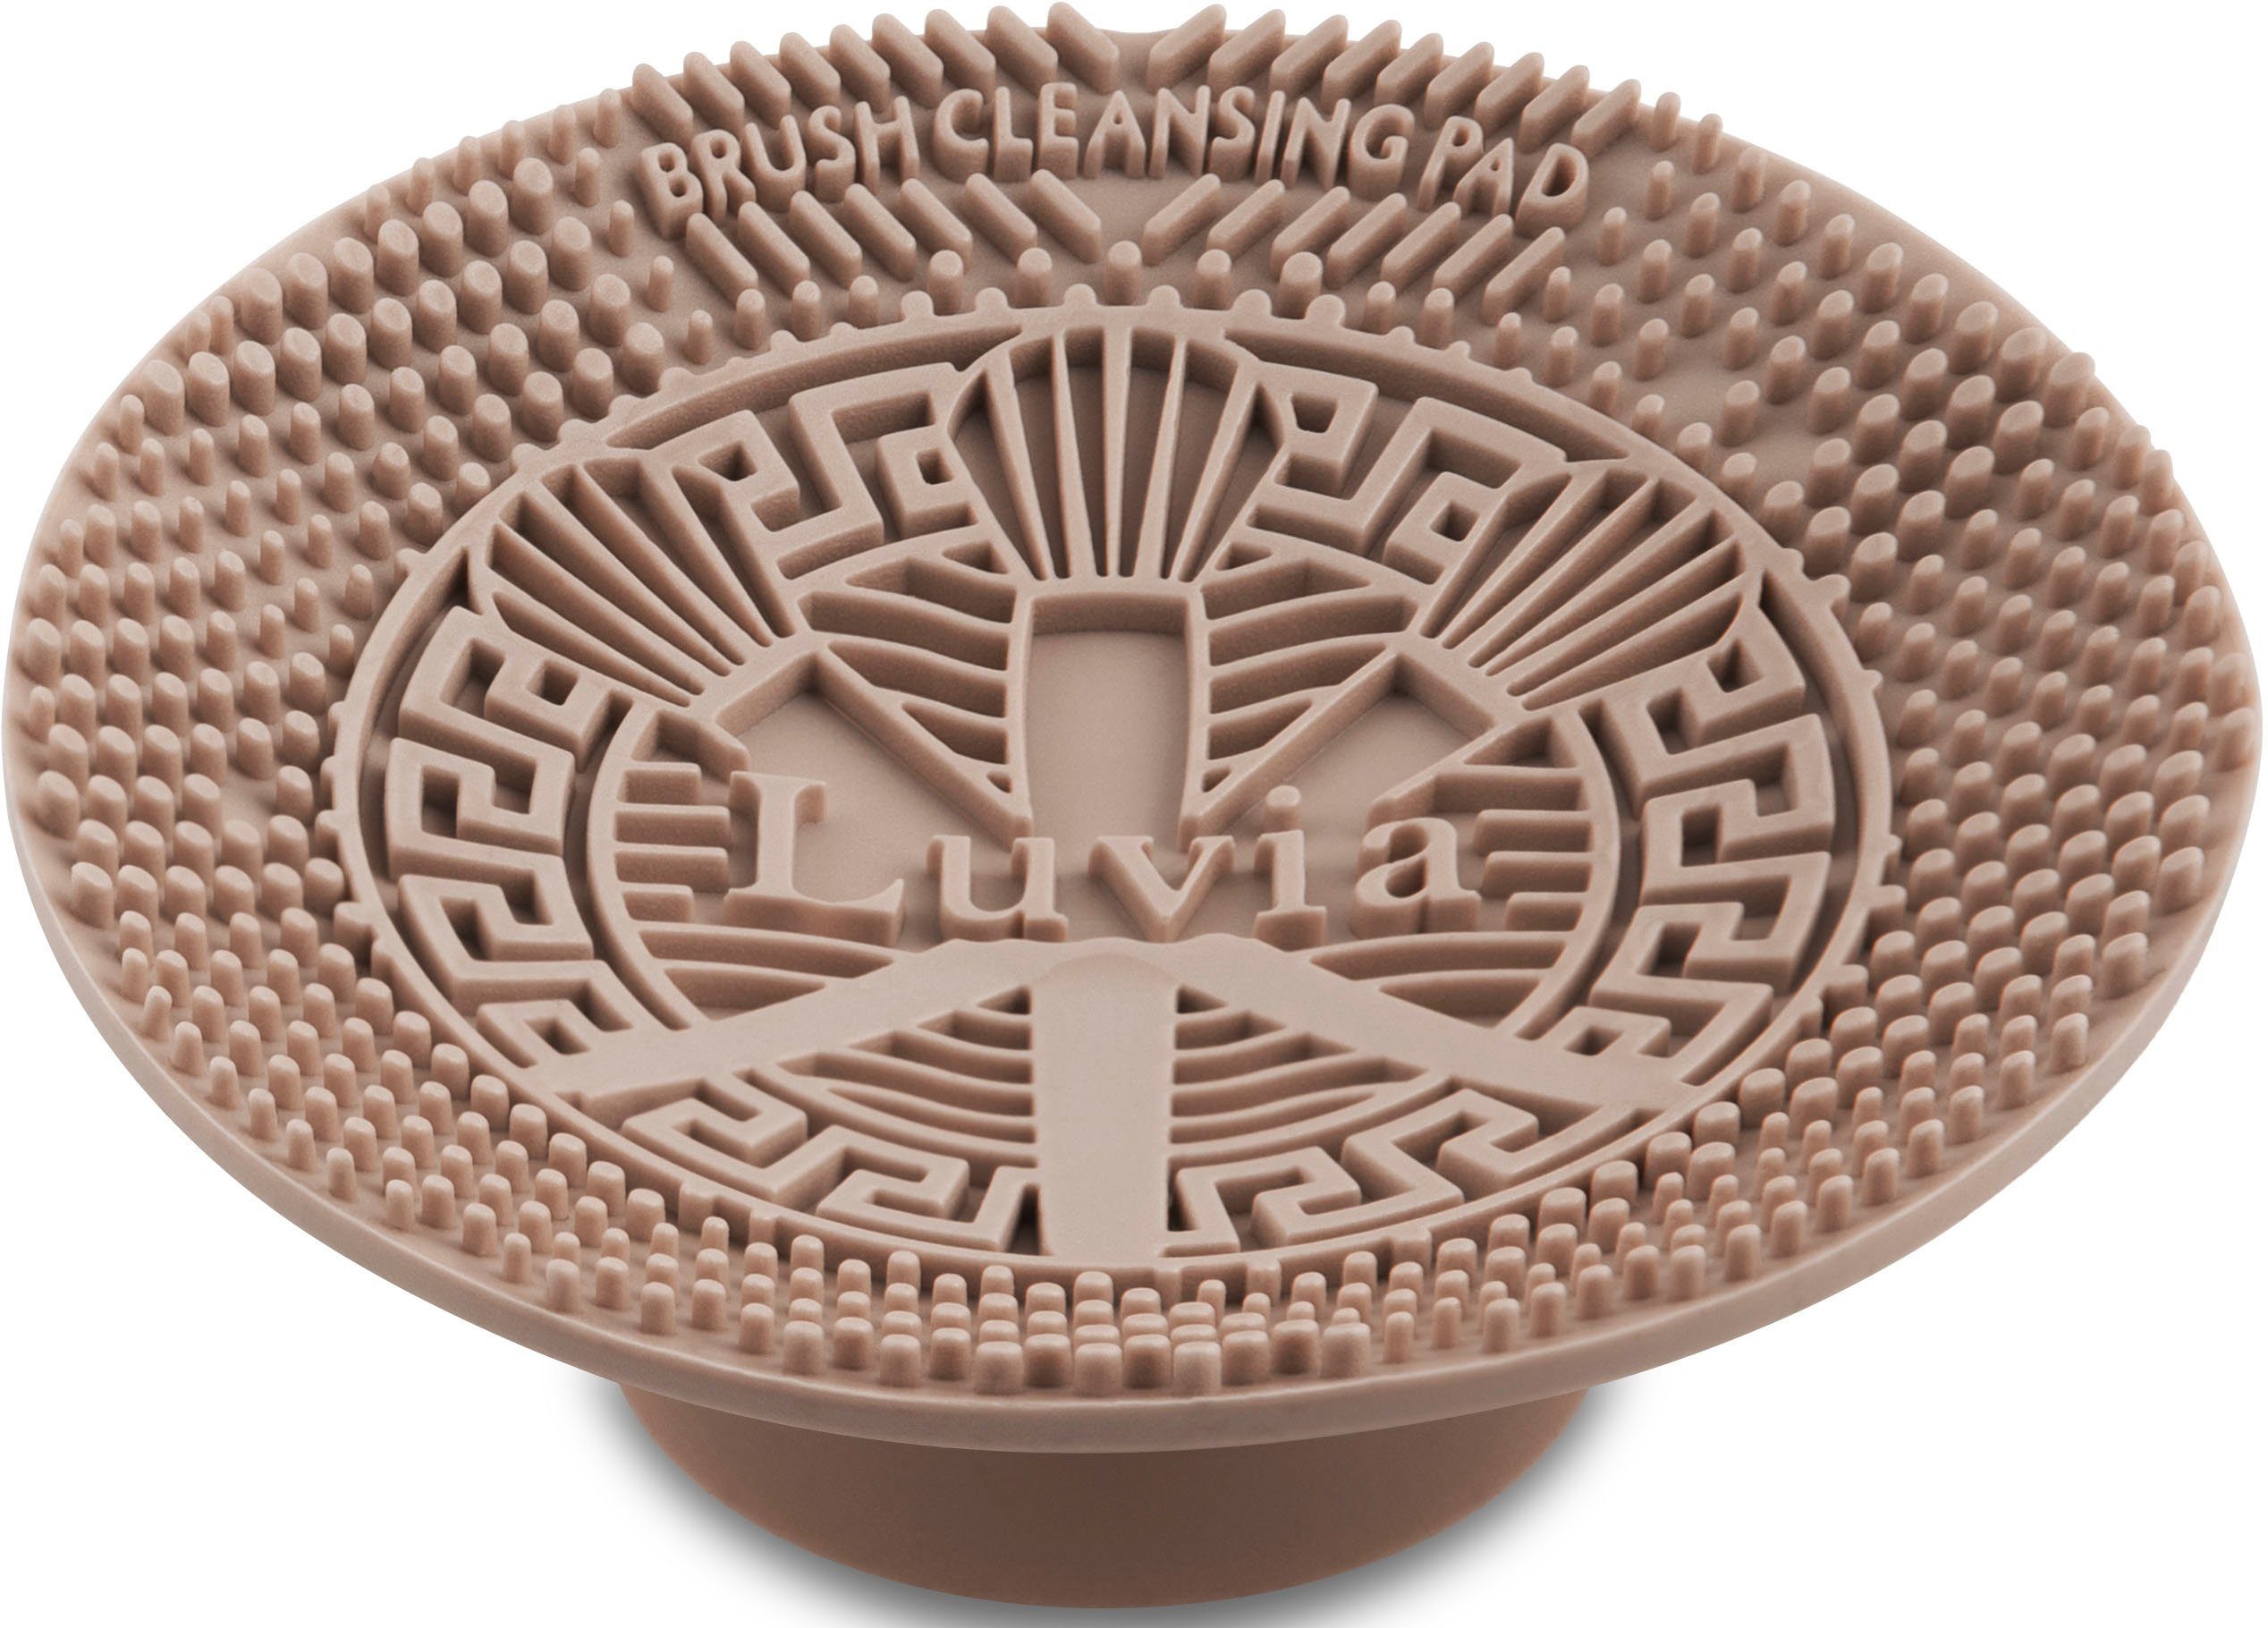 Luvia Cosmetics Kosmetikpinsel-Set Brush Cleansing Pad - Black, Design für wassersparende Reinigung; passt bequem in jede Hand. Coffee